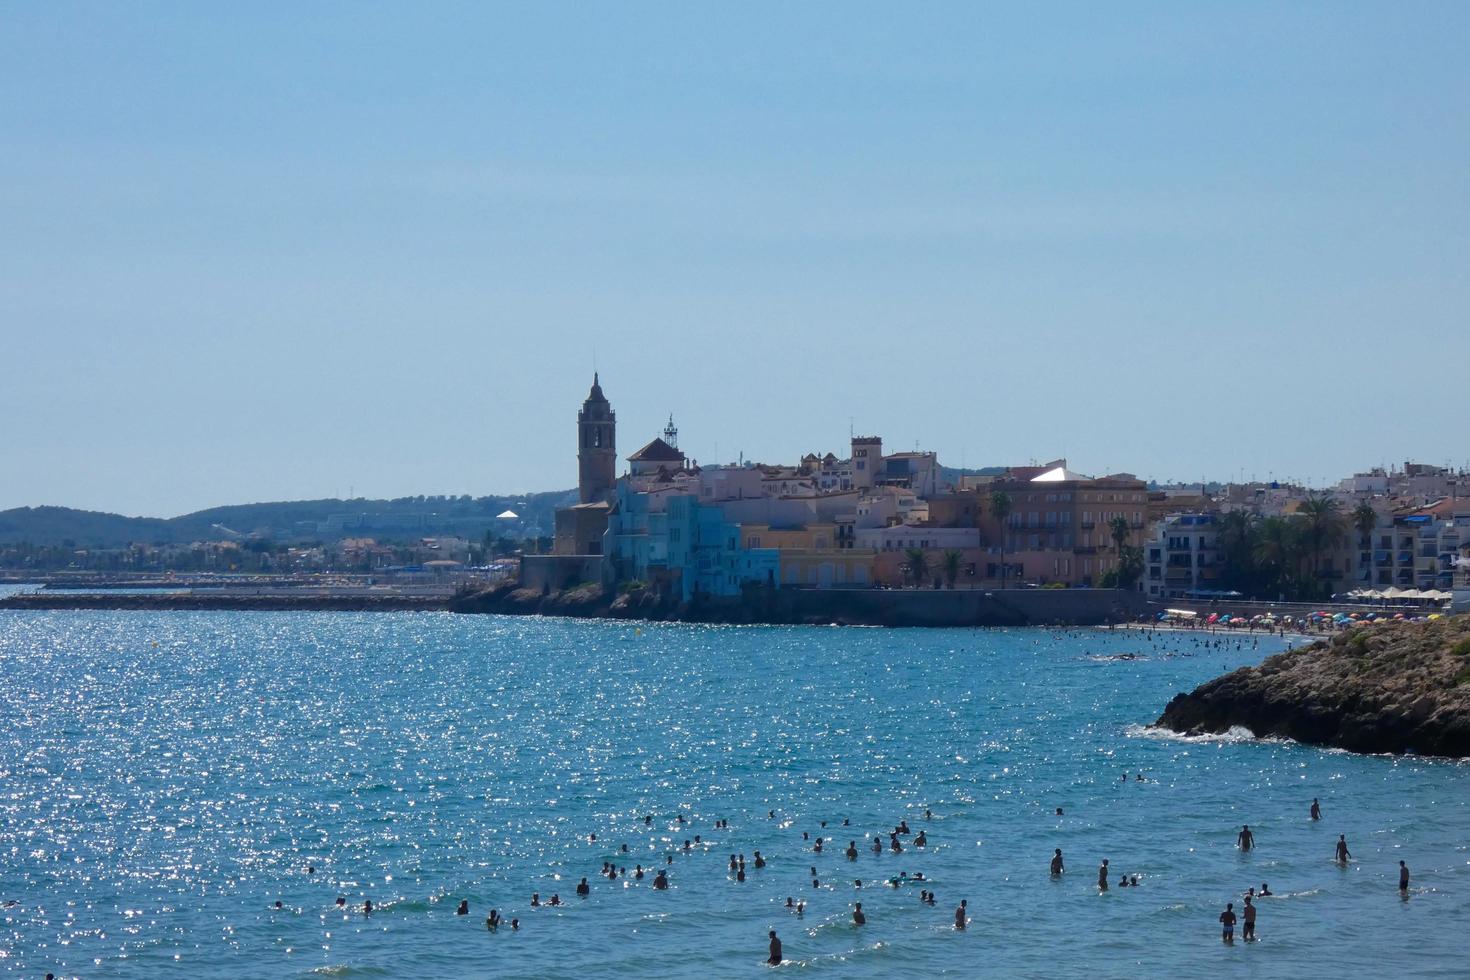 visningar av de skön stad av sitges på de katalansk medelhavs kust. foto